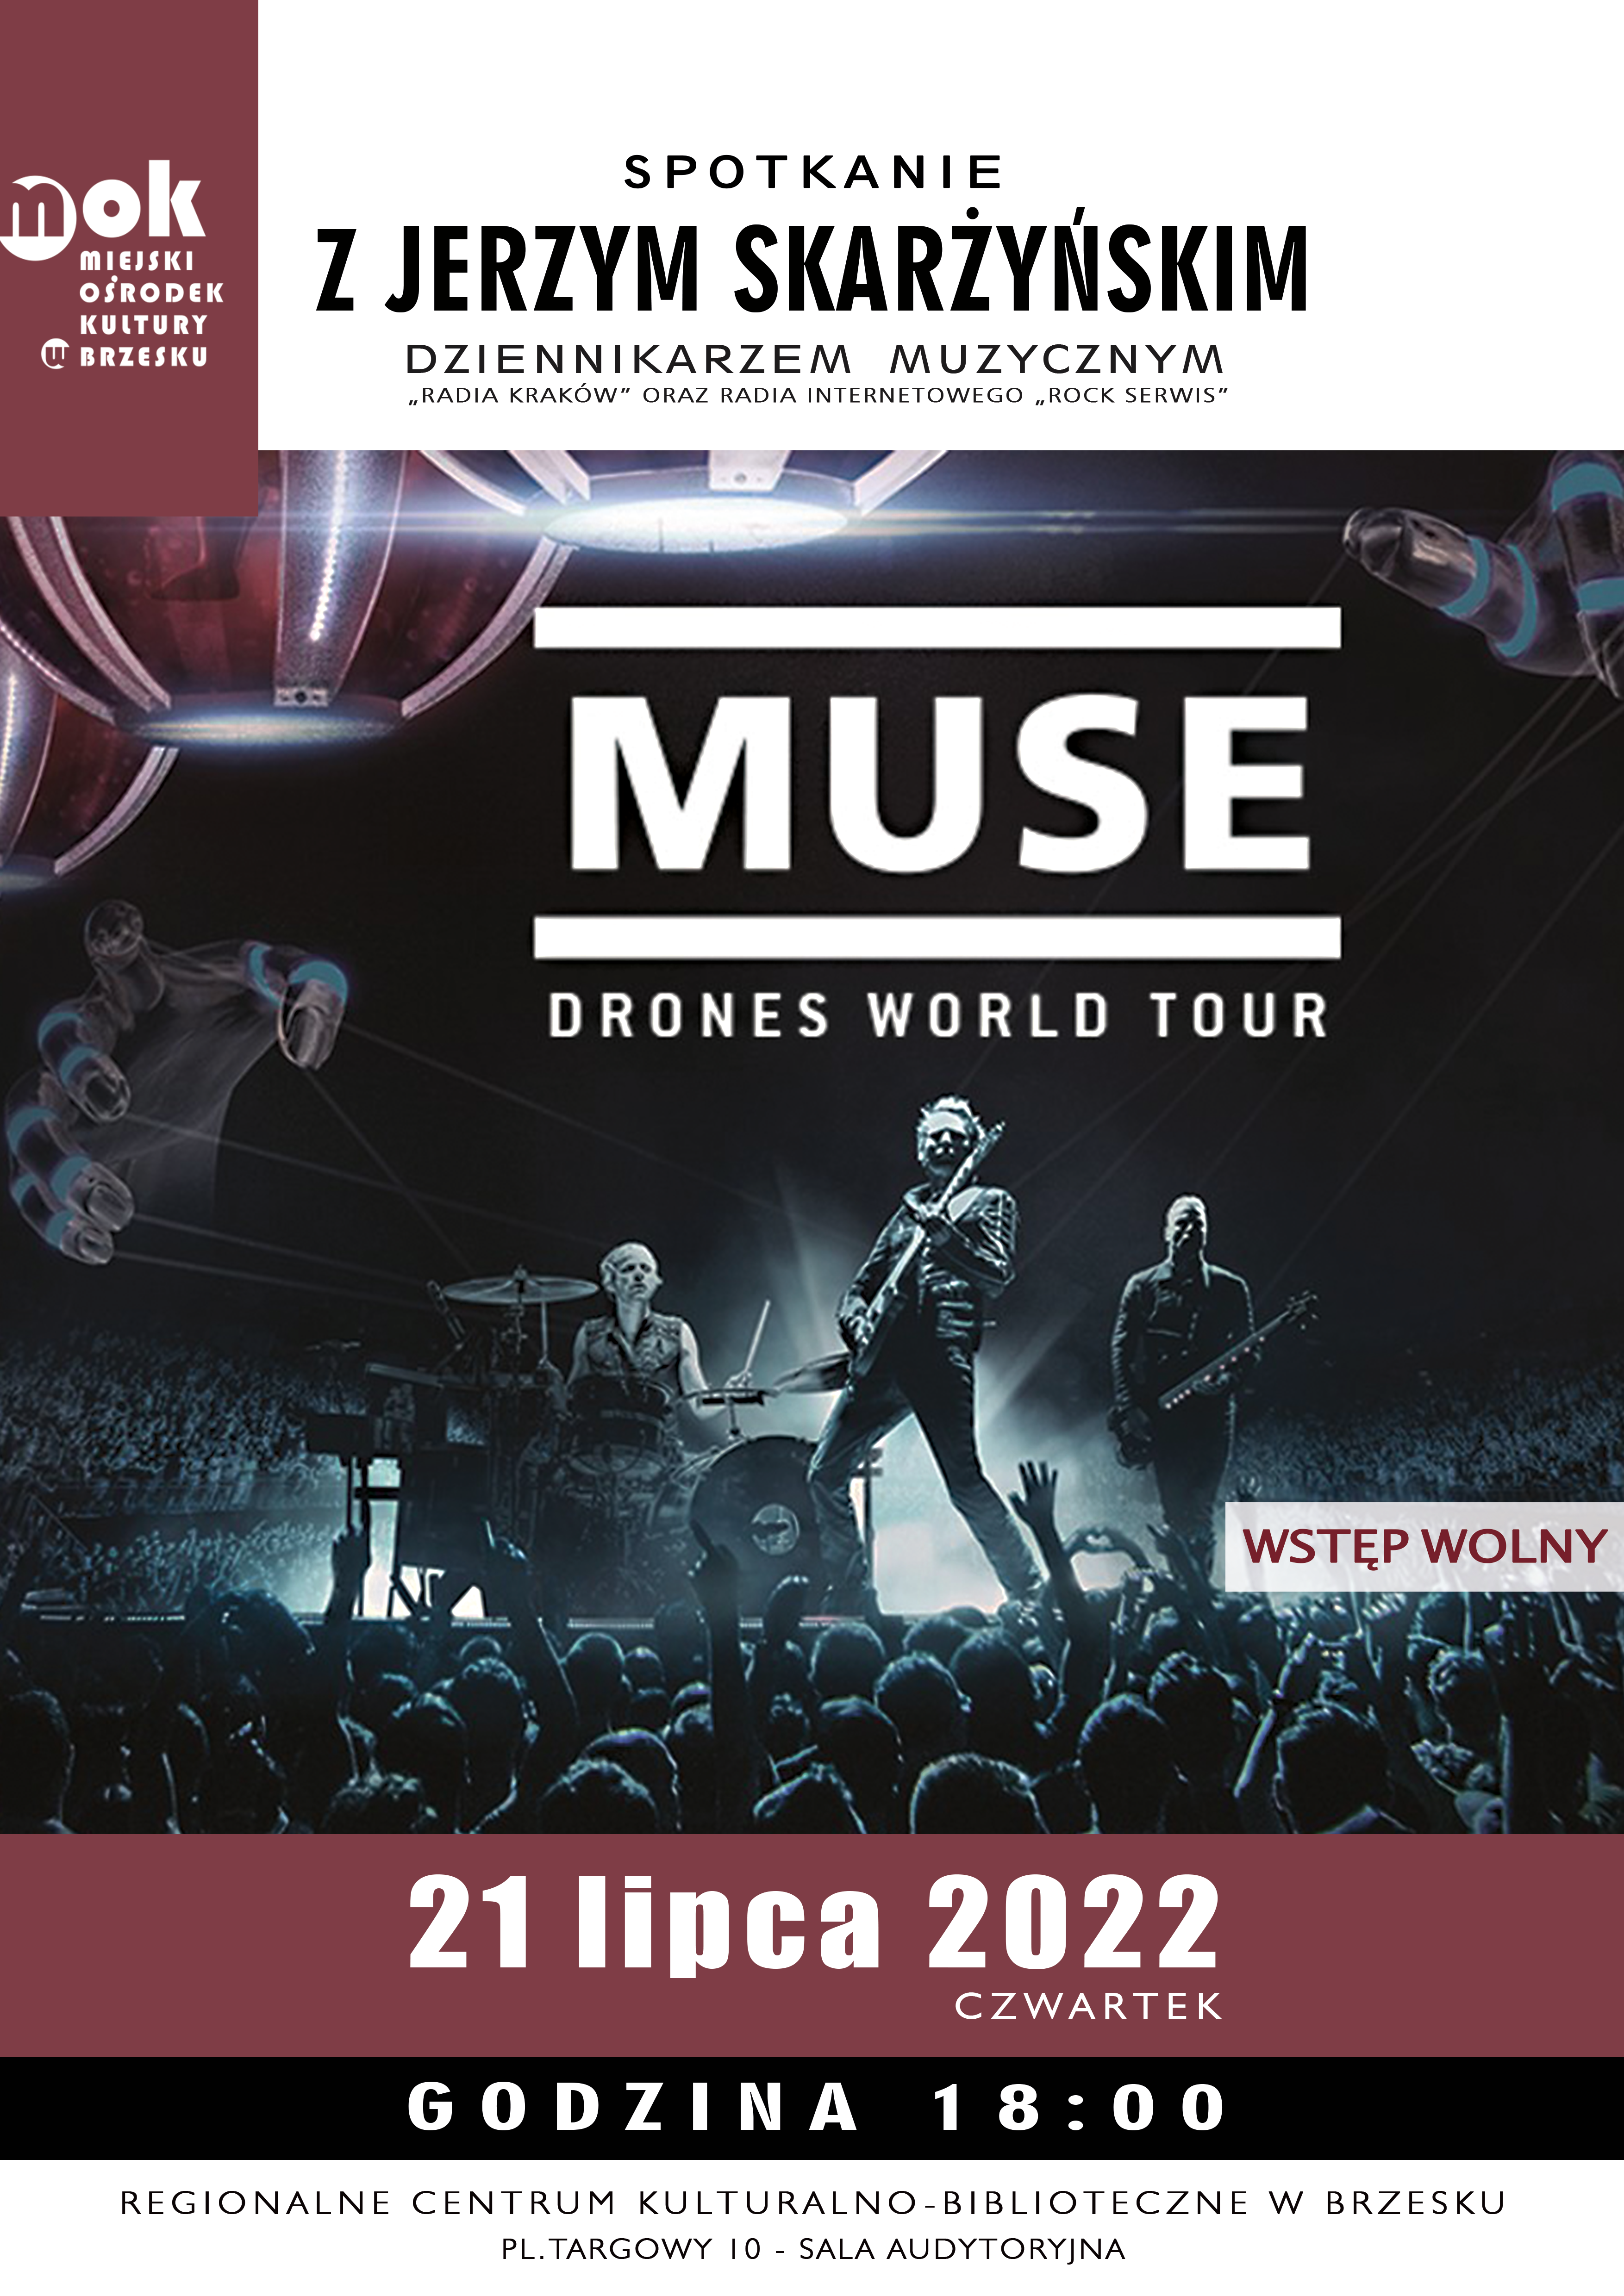 Spotkanie z Jerzym Skarżyńskim: MUSE. Drones Tour – 21 lipca 2022